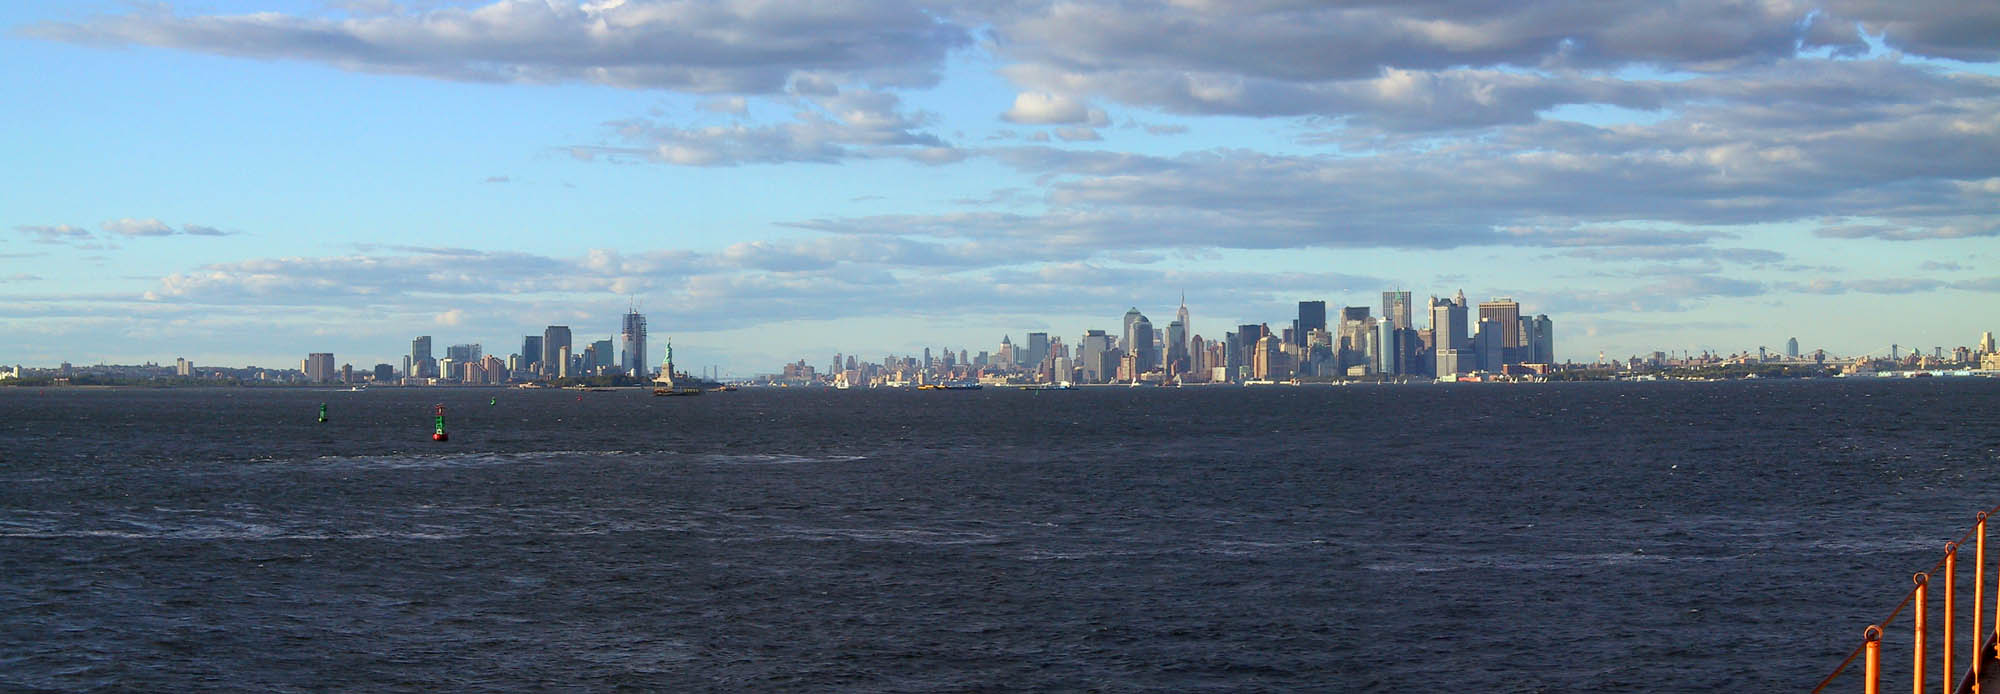 NYC 2002: City Panoramic